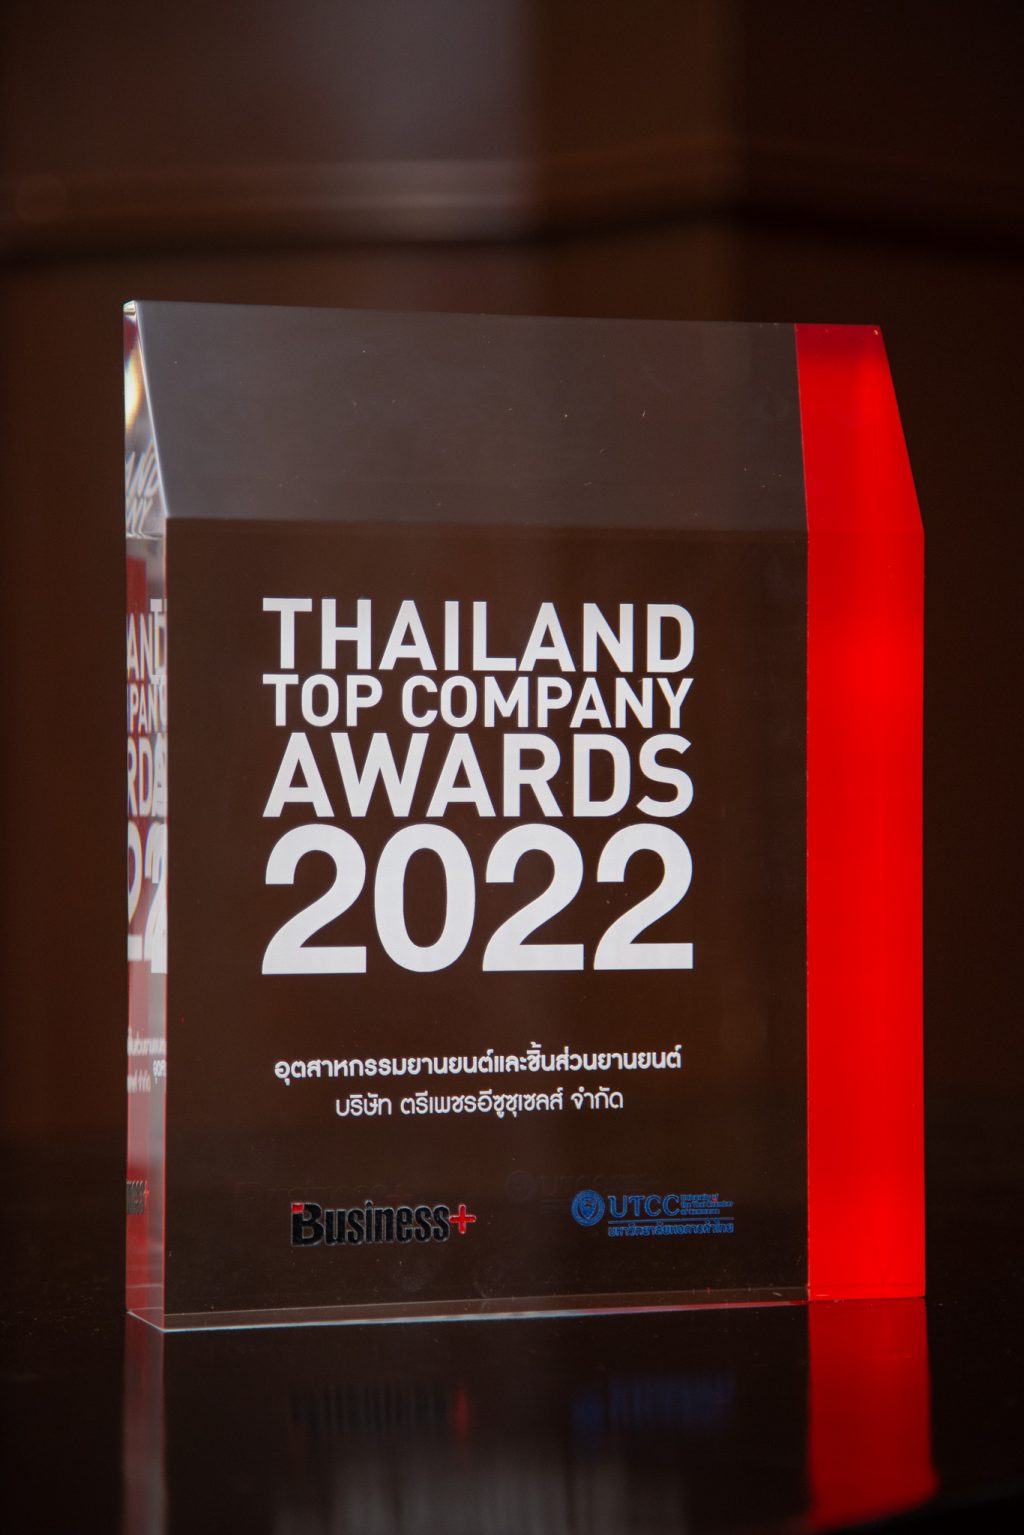 ข่าวรถวันนี้ : อีซูซุรับรางวัลเกียรติยศ “สุดยอดองค์กรแห่งปี” (Thailand Top Company Awards 2022) ต่อเนื่องเป็นปีที่ 8